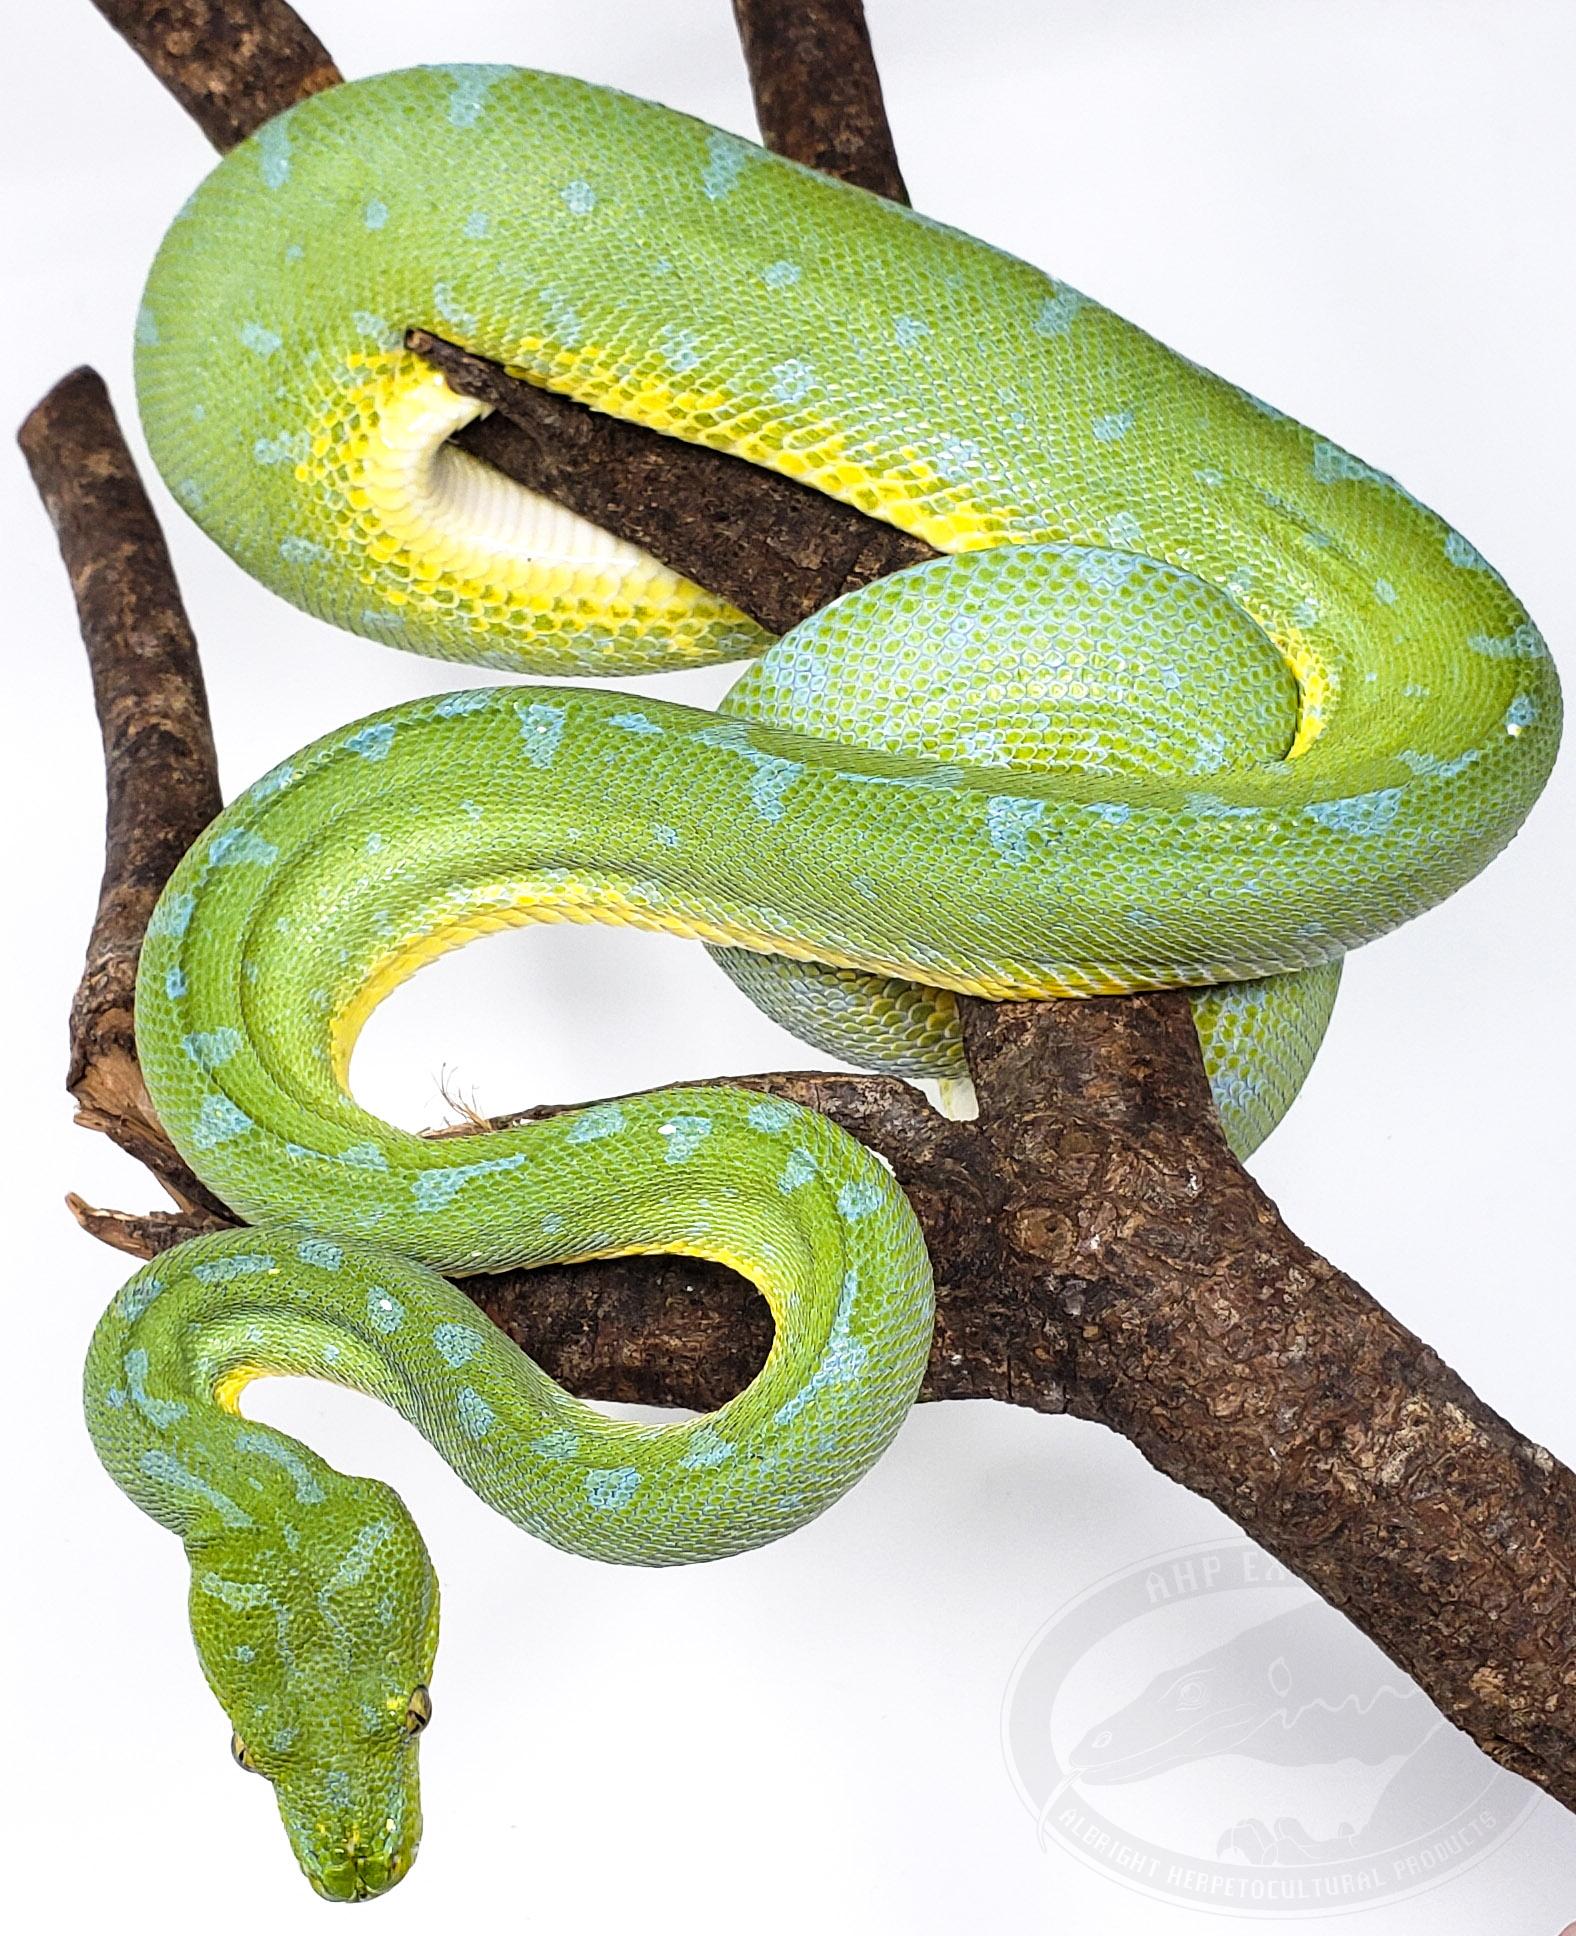 Sorong Green Tree Python by AHP Exotics